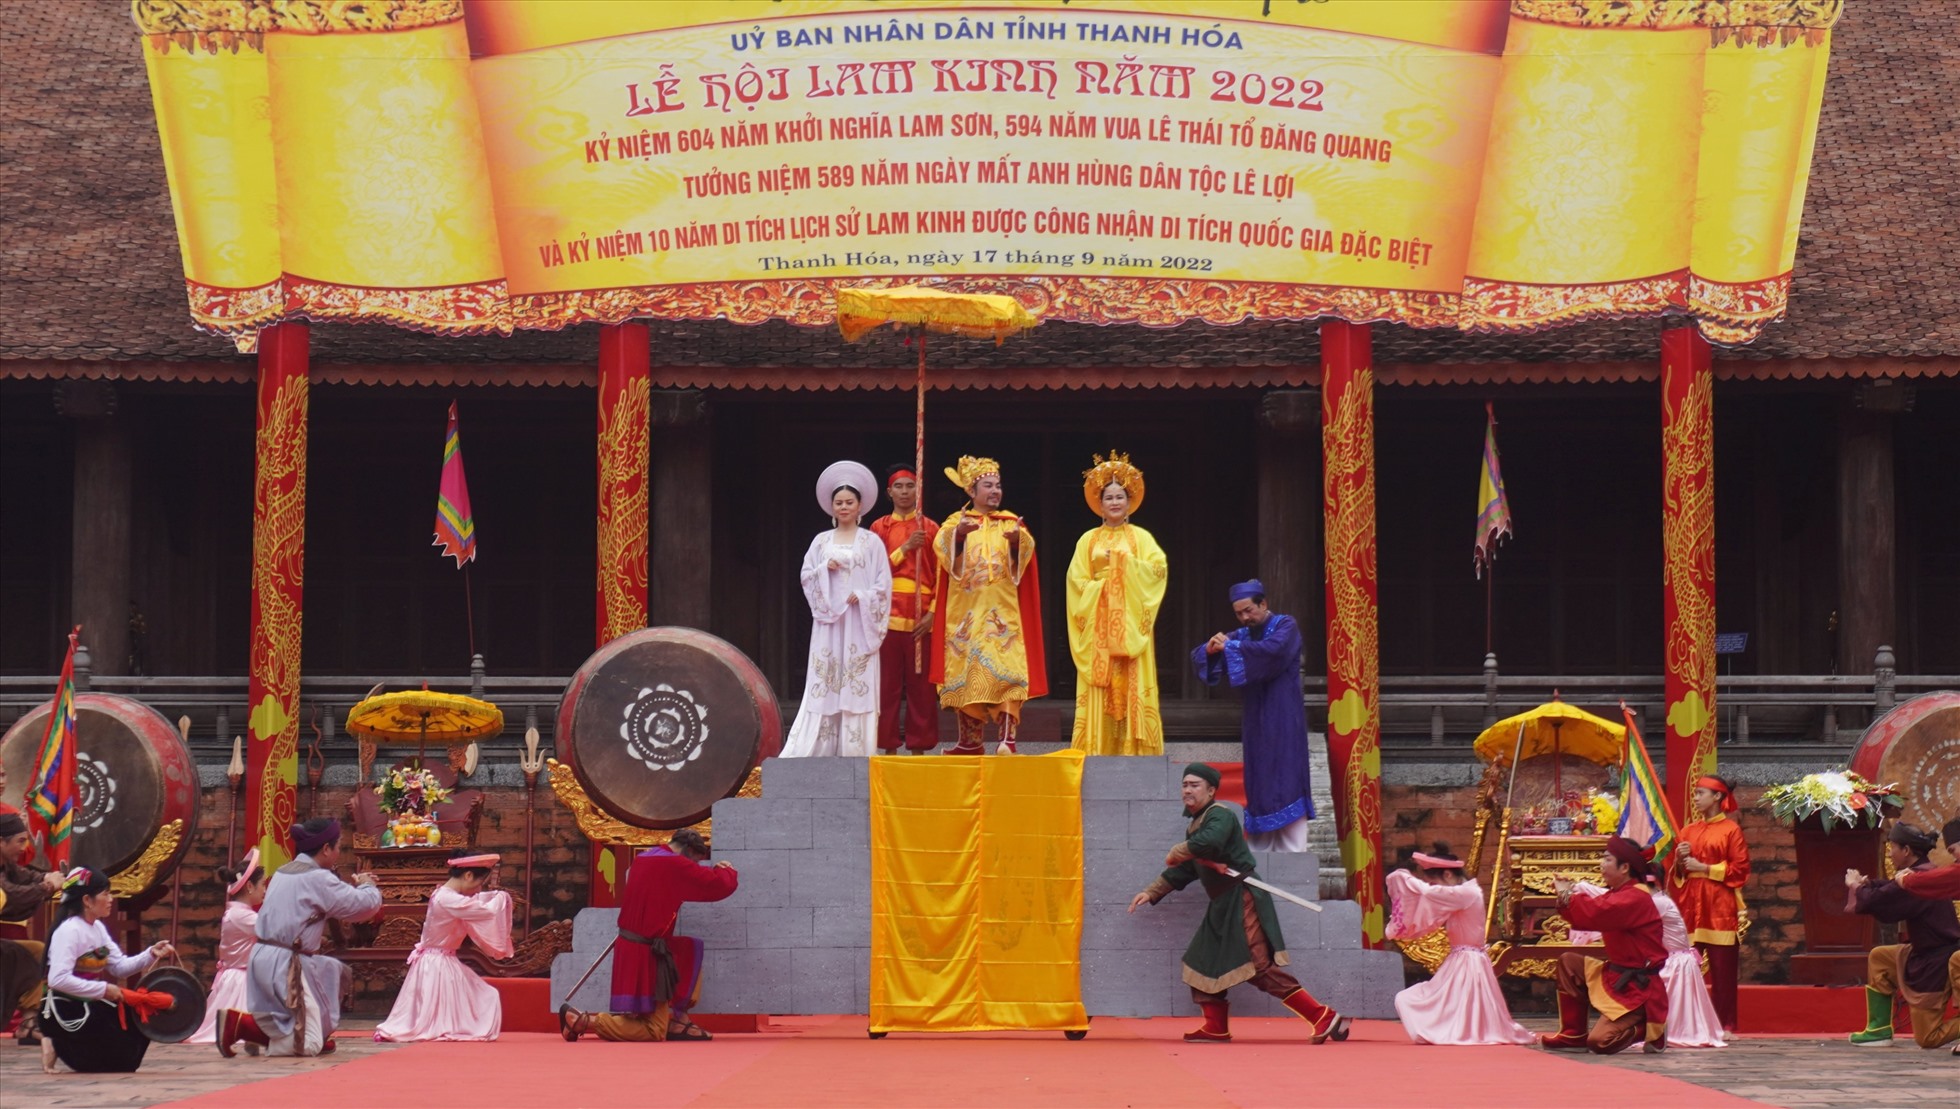 Được biết, Lễ hội Lam Kinh 2022, nhằm kỷ niệm 604 năm Khởi nghĩa Lam Sơn, 594 năm Vua Lê đăng quang, 589 năm ngày mất của Anh hùng dân tộc Lê Lợi và kỷ niệm 10 năm được công nhận là di tích quốc gia đặc biệt (2012-2022).  Ảnh: Q.D